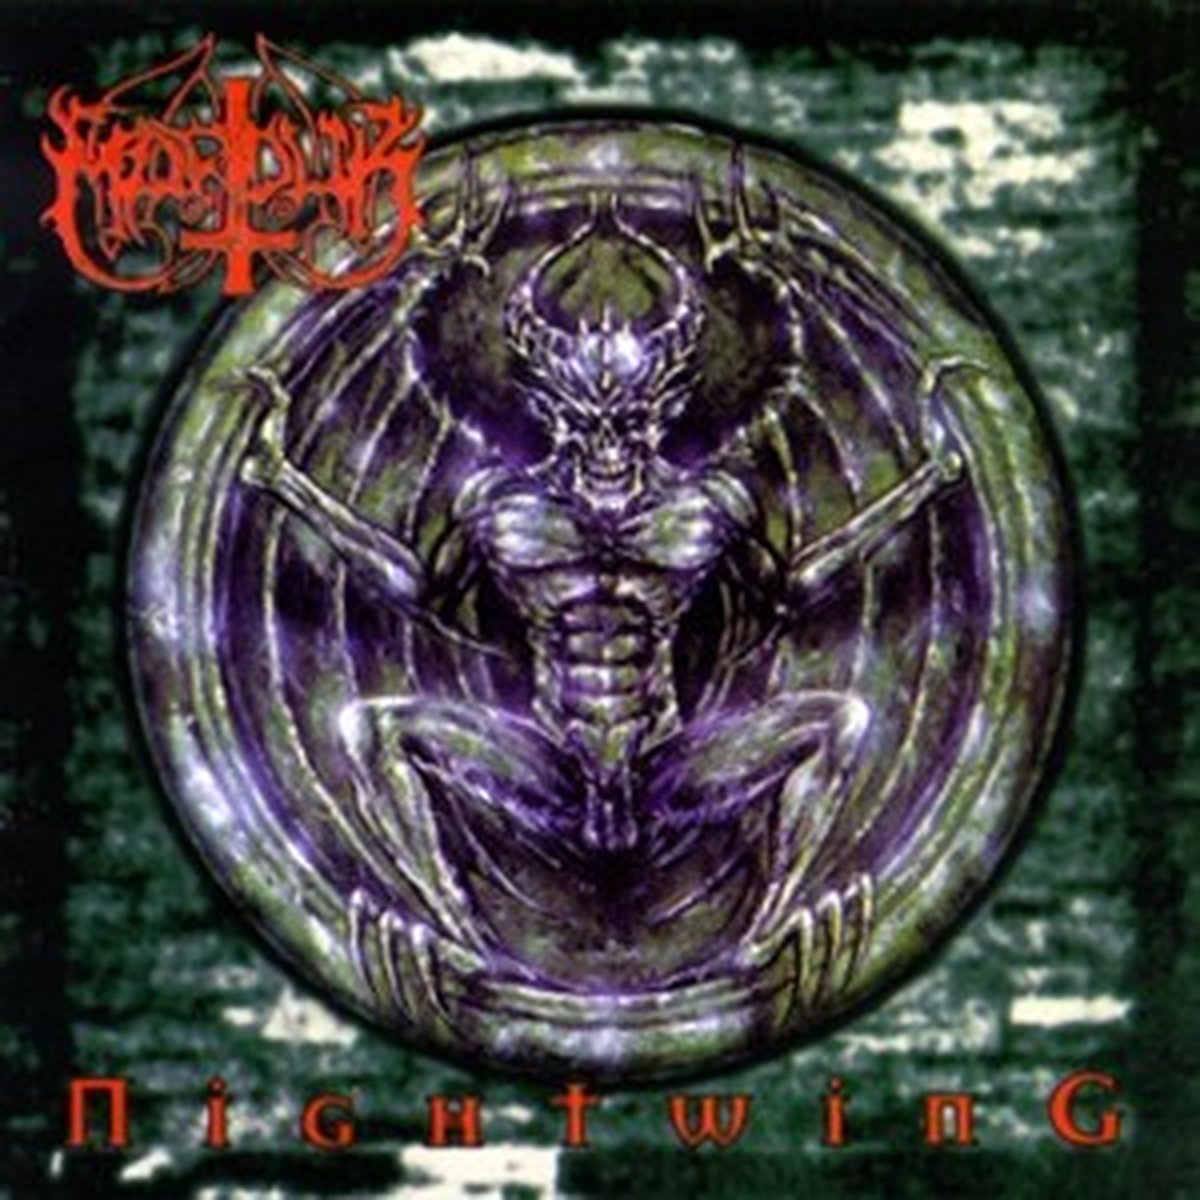 Marduk - Nightwing (CD) - Marduk